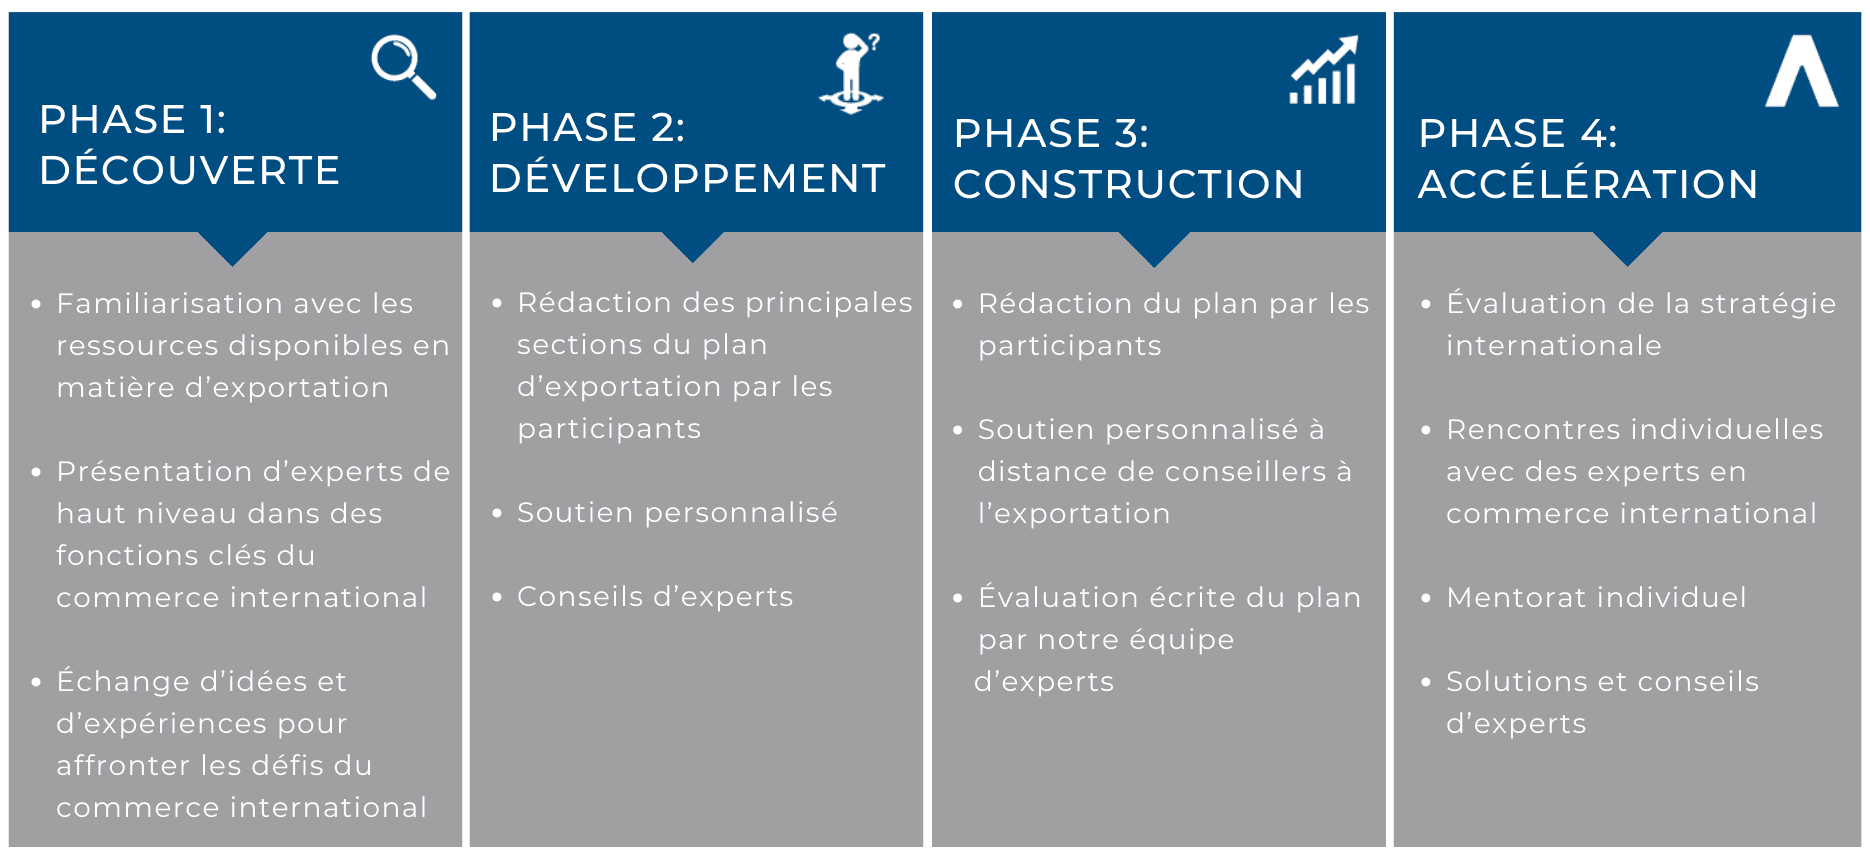 Les 4 phases pour assurer son développement international : découverte, développement, construction, accélération